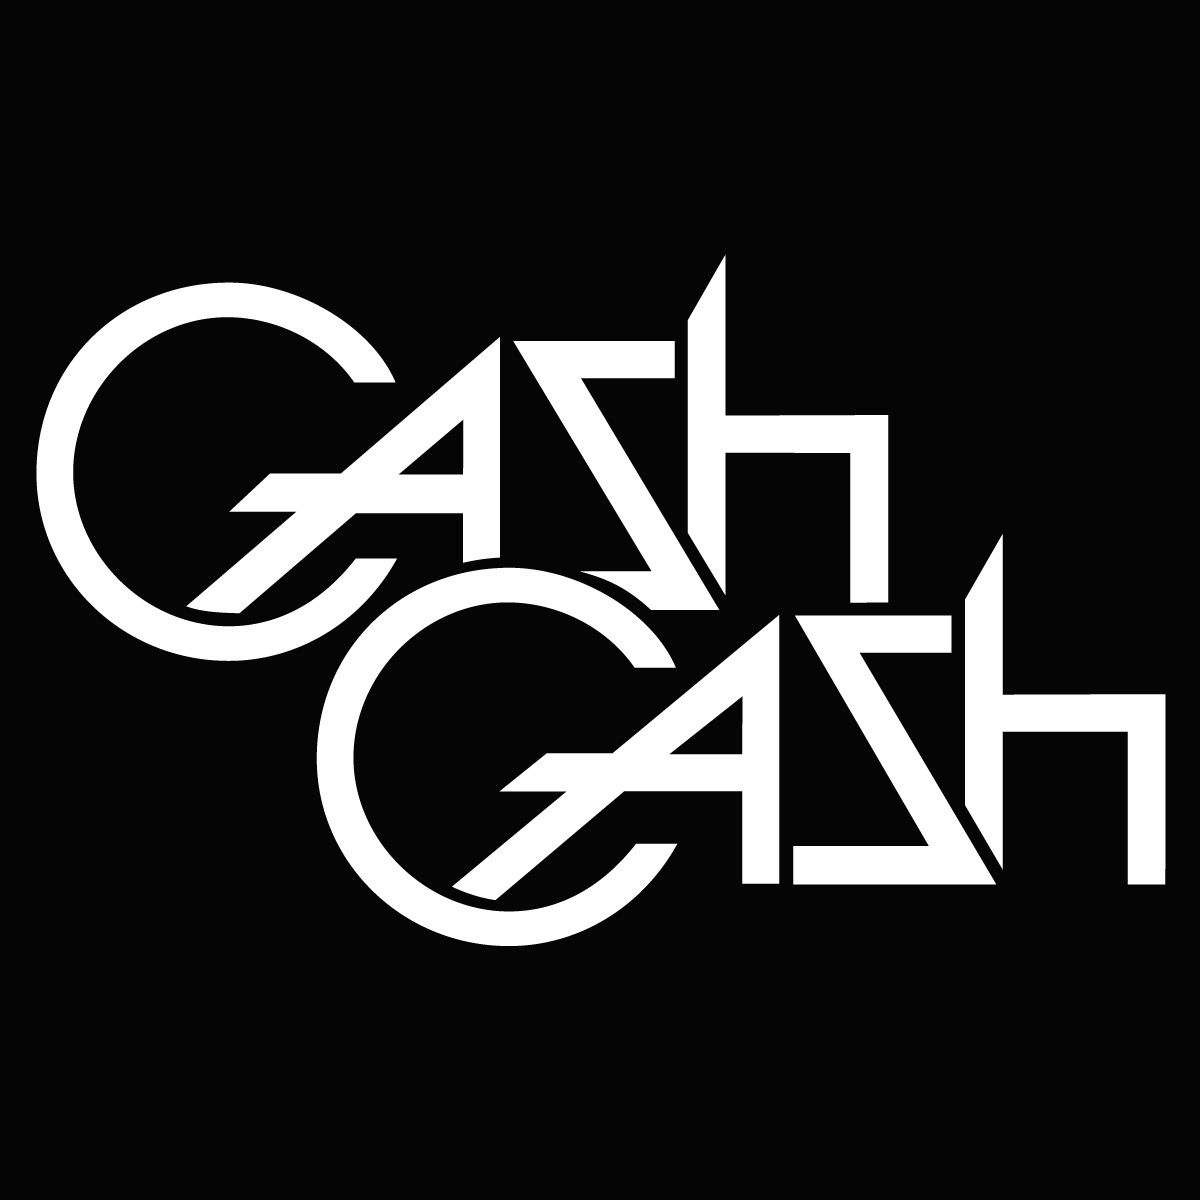 design cash cash edm Big Beat atlantic cd CD packaging album cover Album dj collage lightning 80s Retro